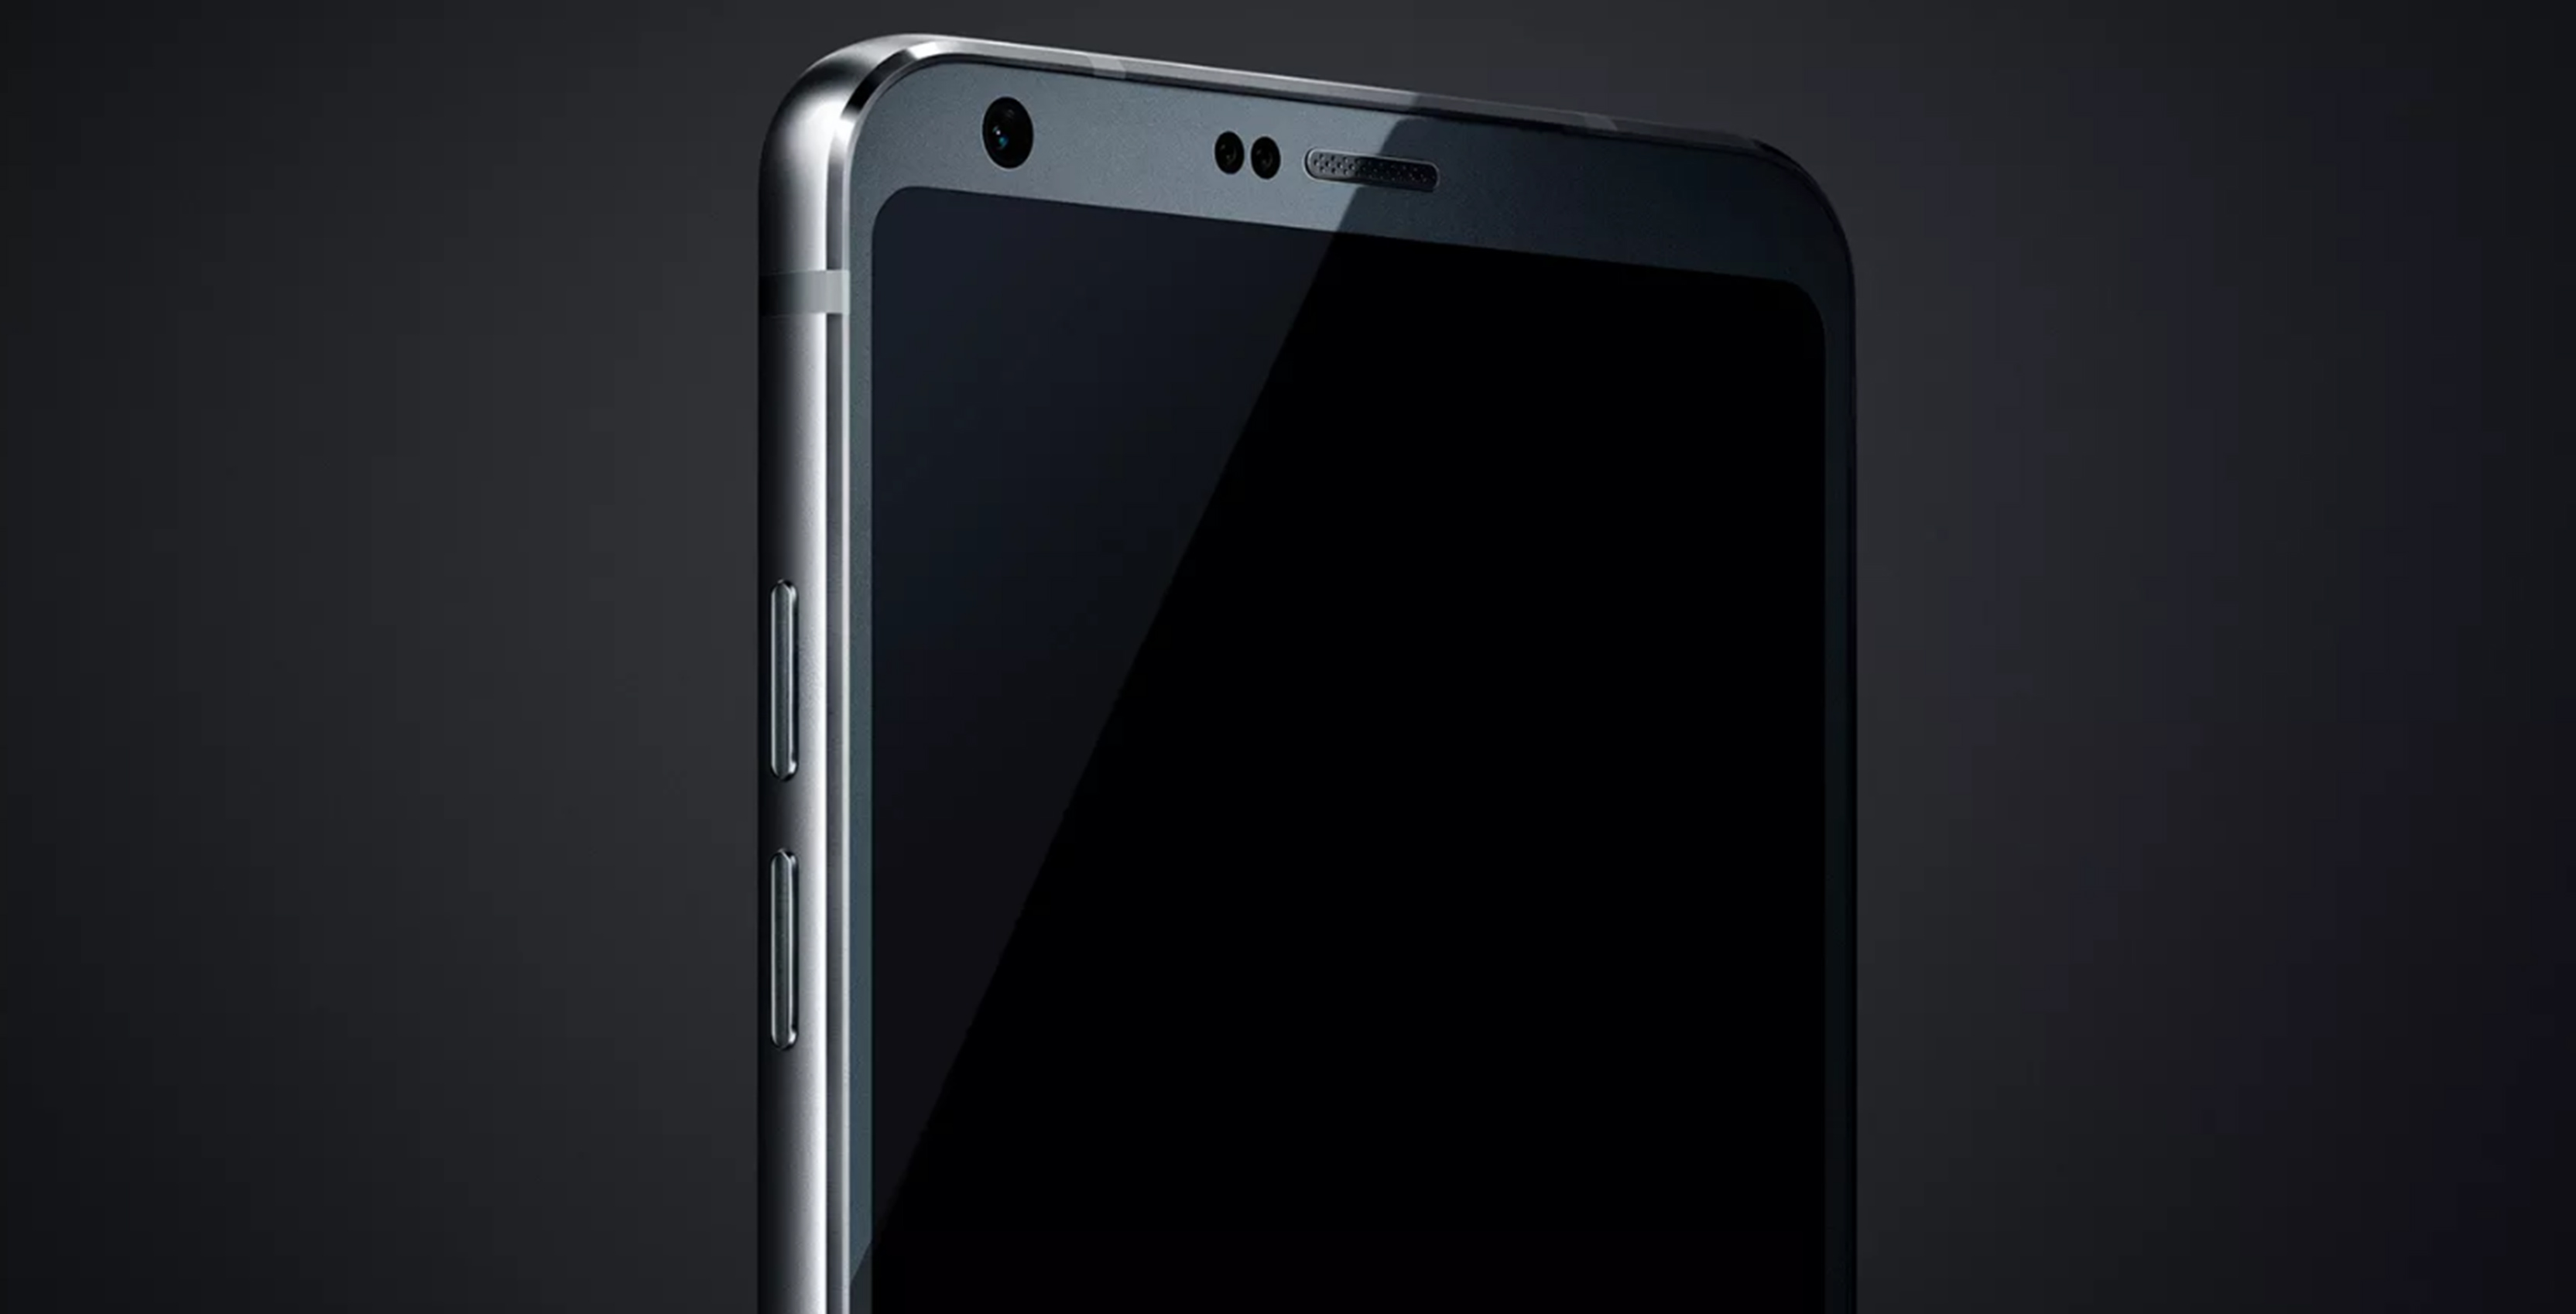 Leaked LG G6 photo